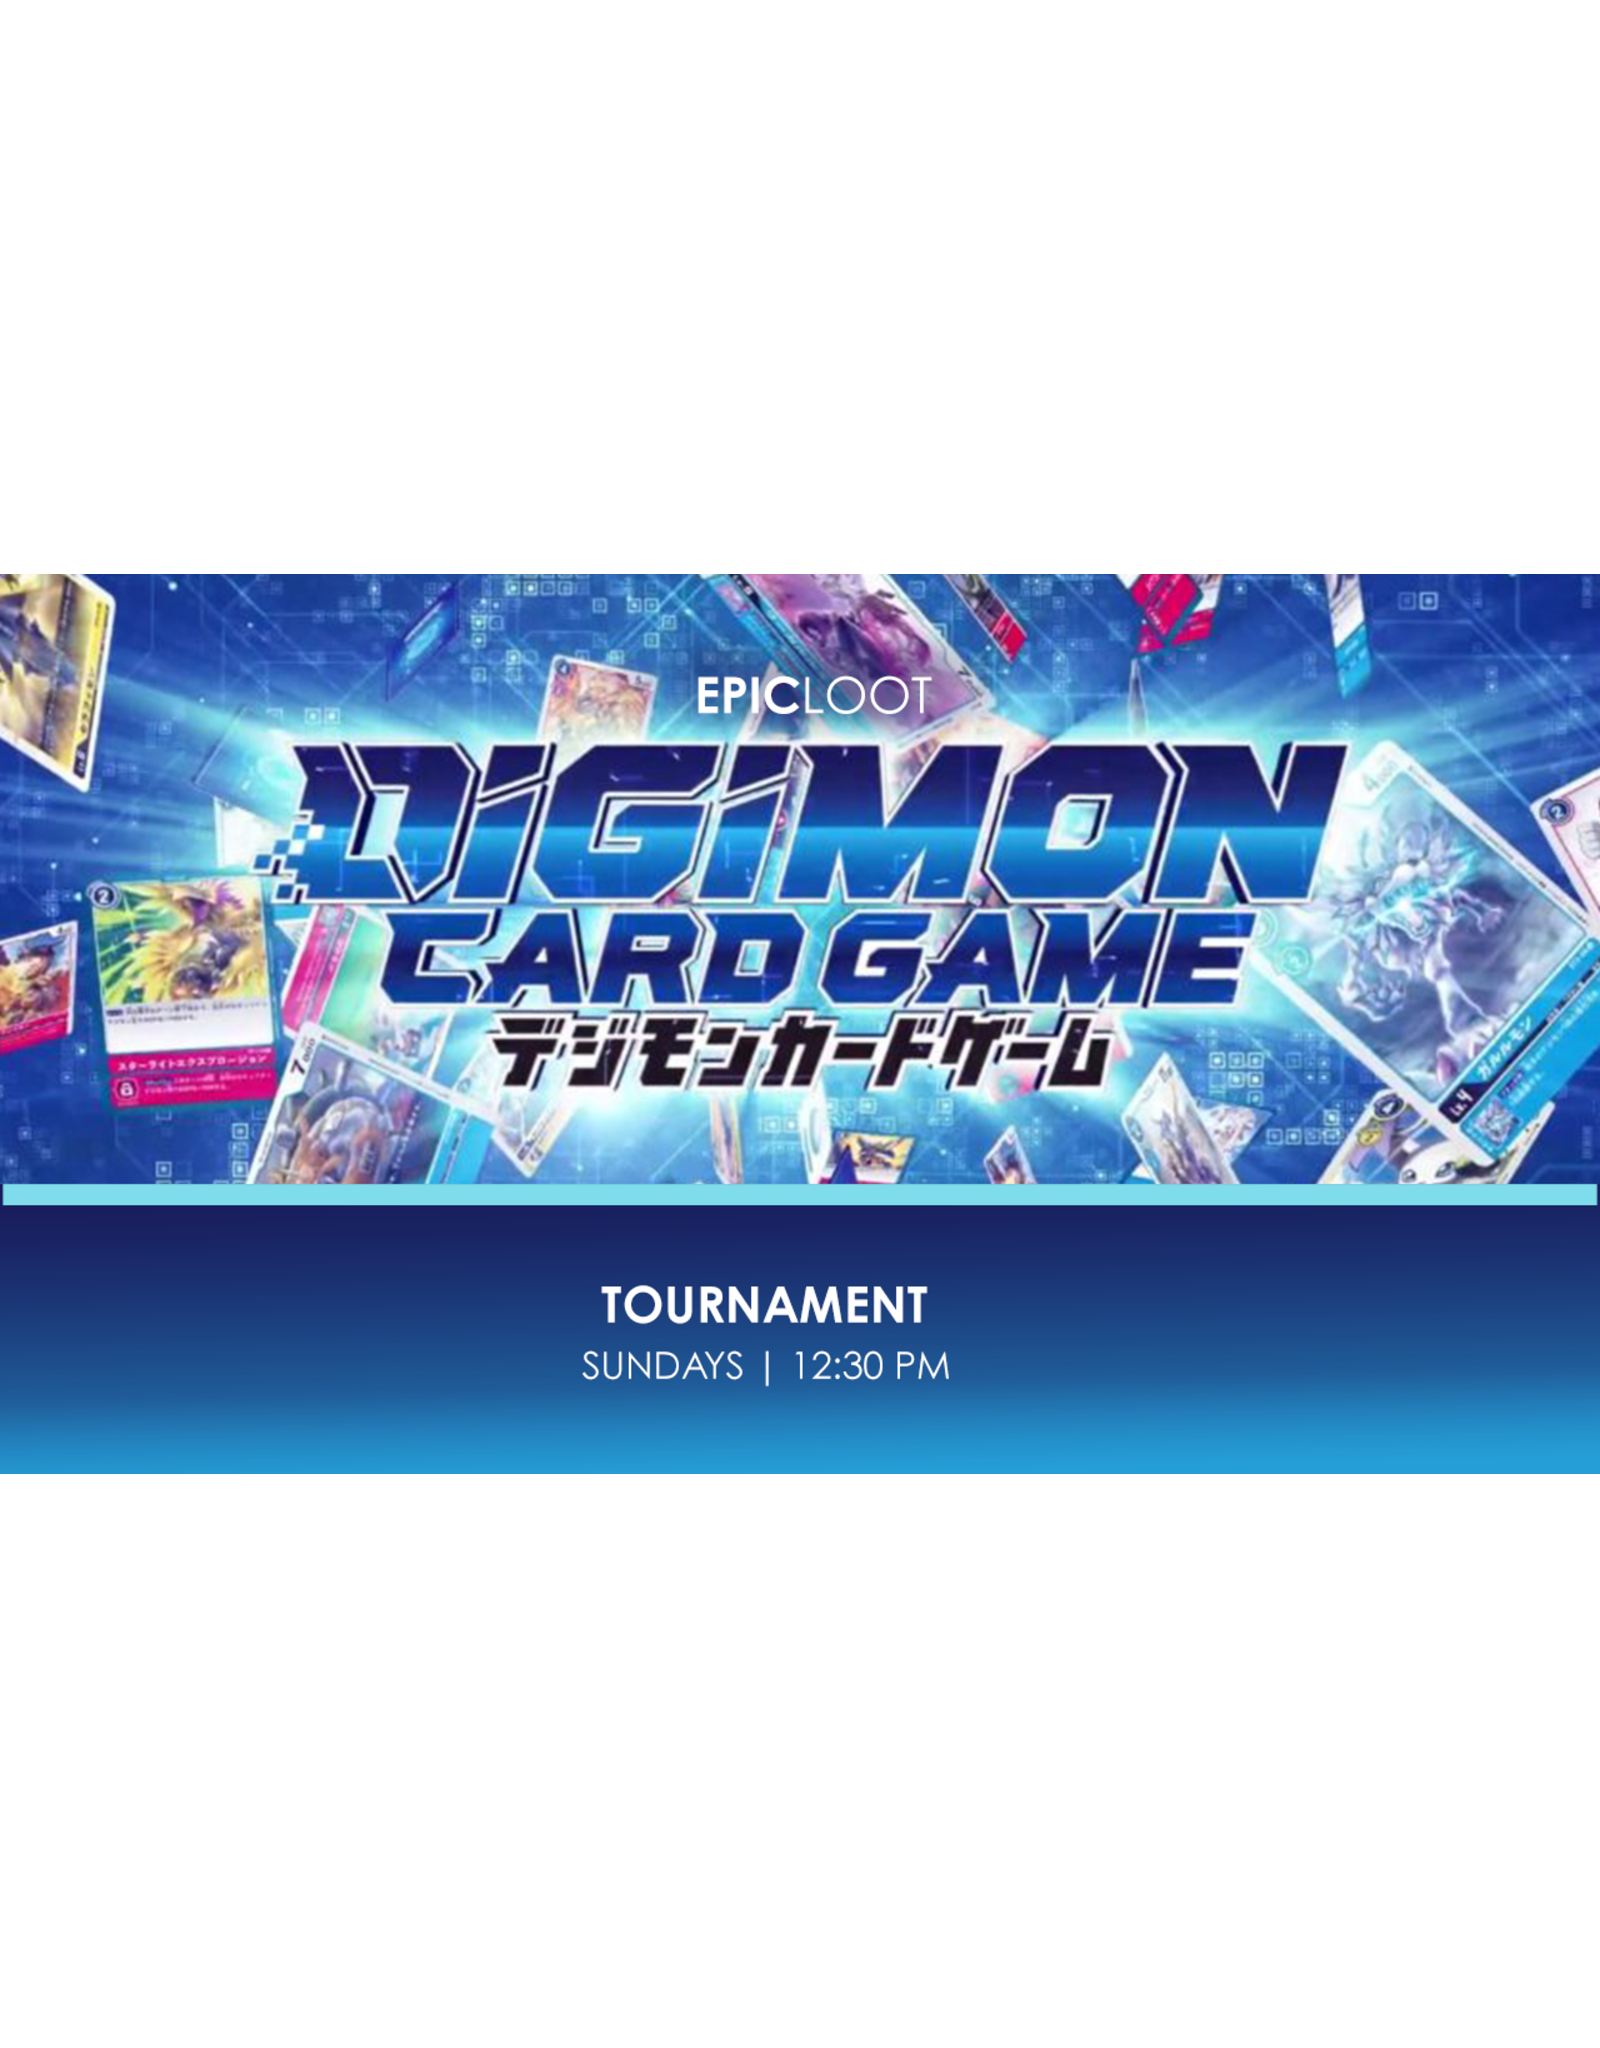 Sun 10/9 12:30PM Digimon Tournament